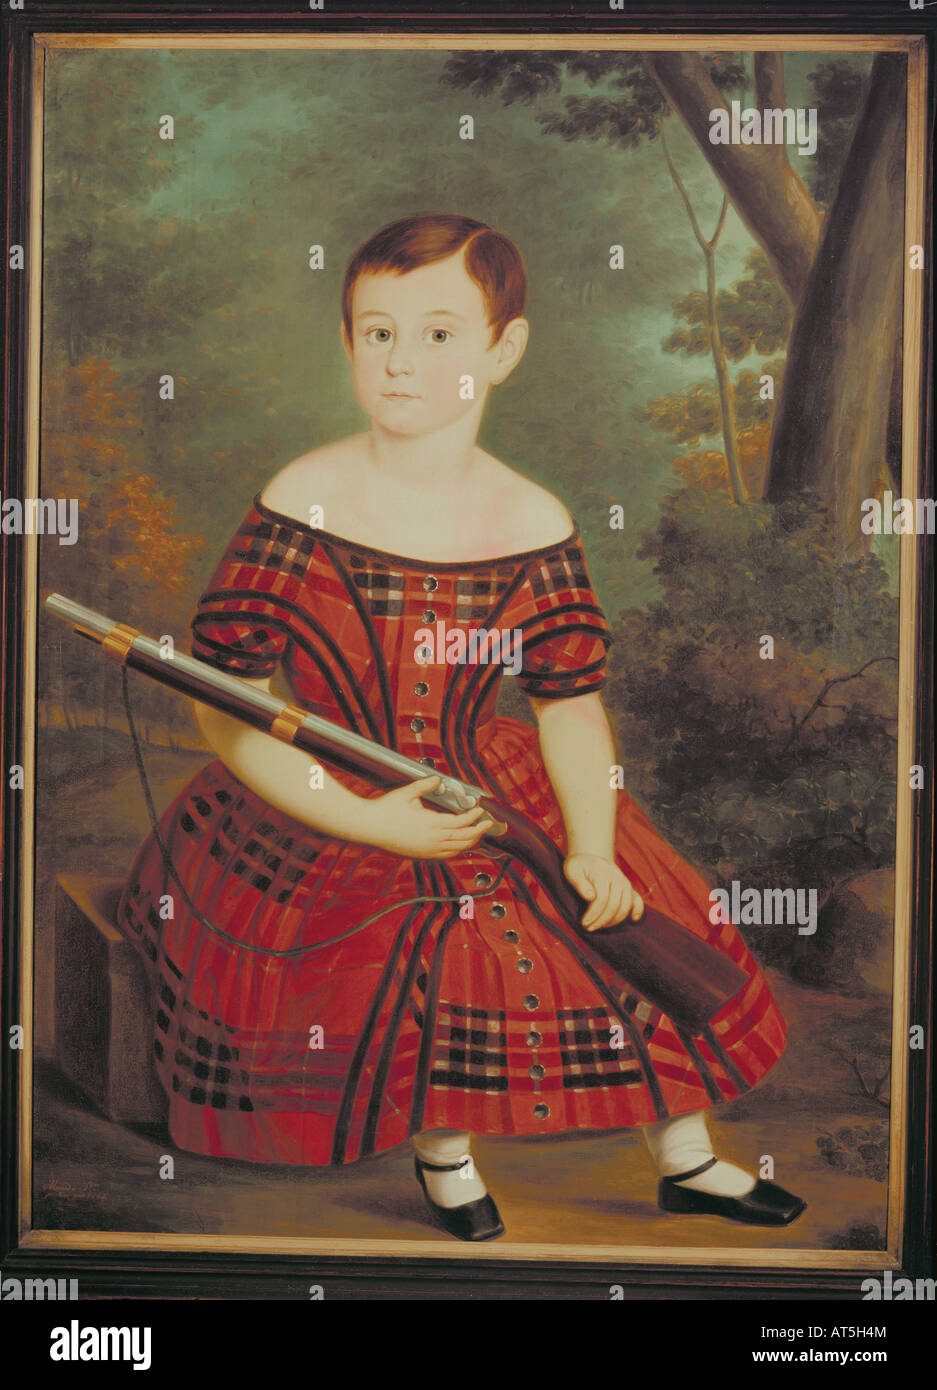 Bildende Kunst, naive Kunst, Malerei, Junge mit Waffe, Gemälde von S. Almeido, 1847, Öl auf Leinwand, Privatsammlung, Artist's Urheberrecht nicht gelöscht werden Stockfoto